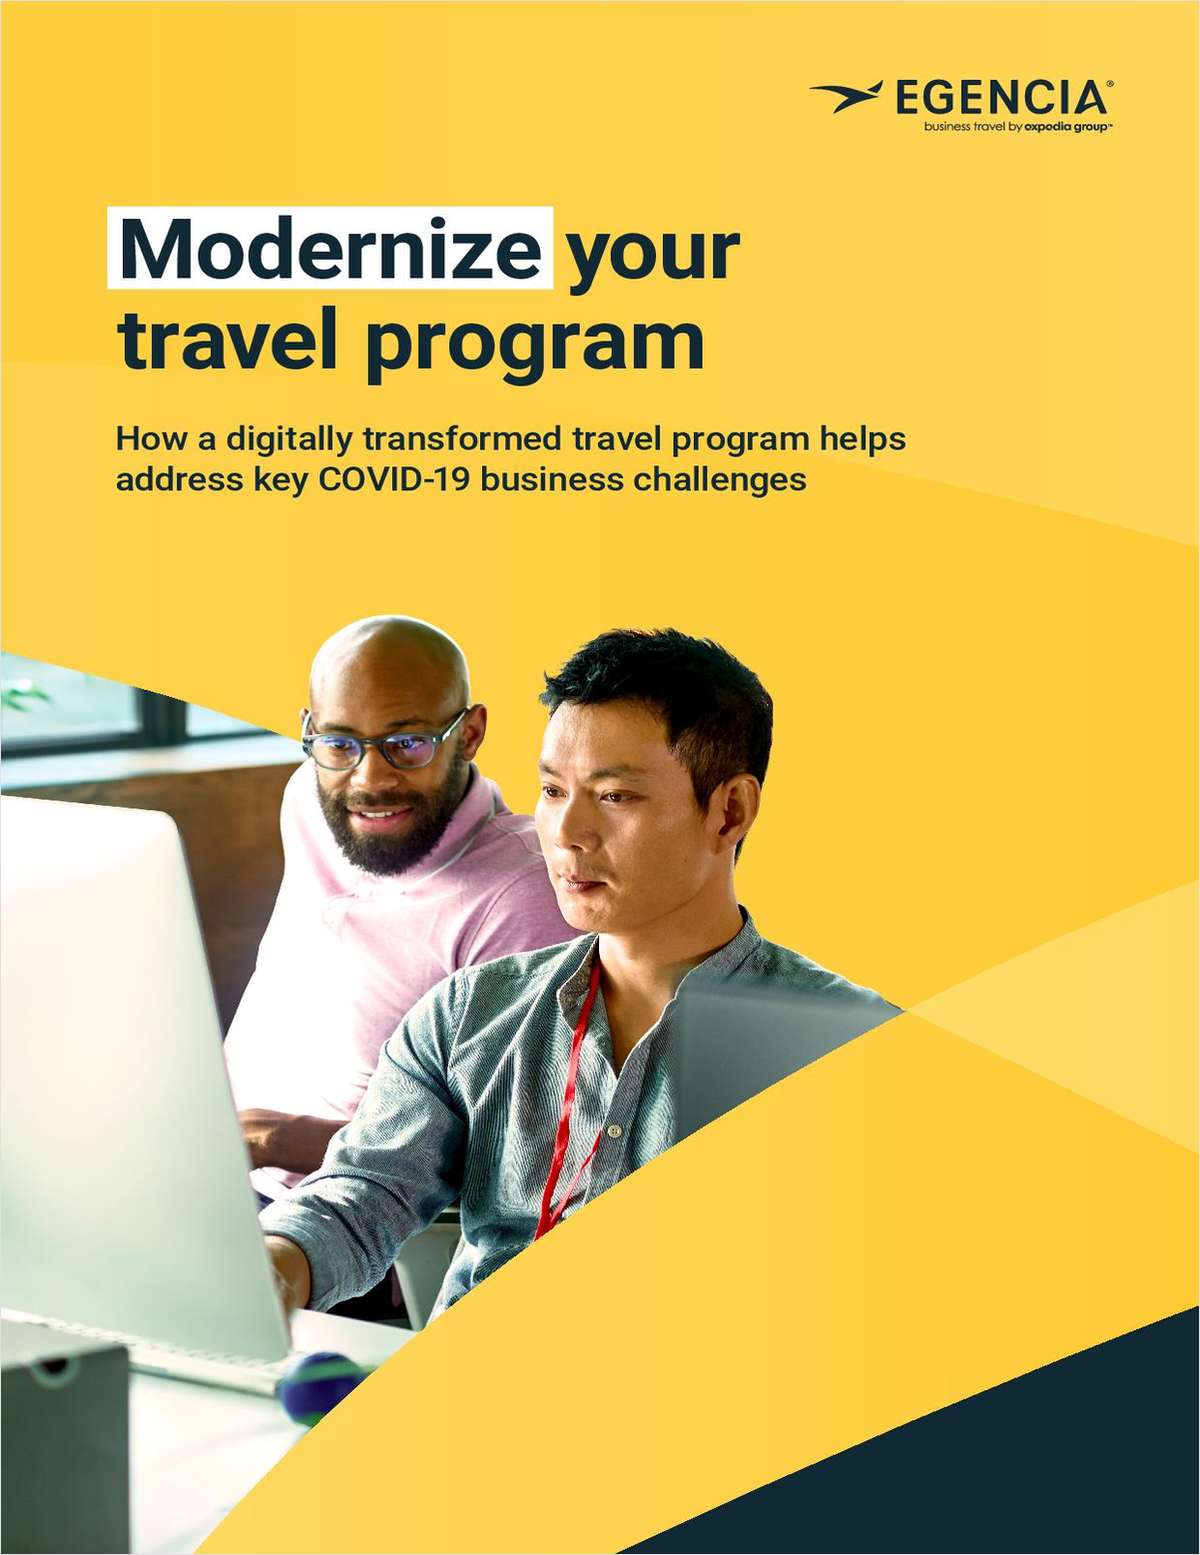 How to Modernize Your Travel Program